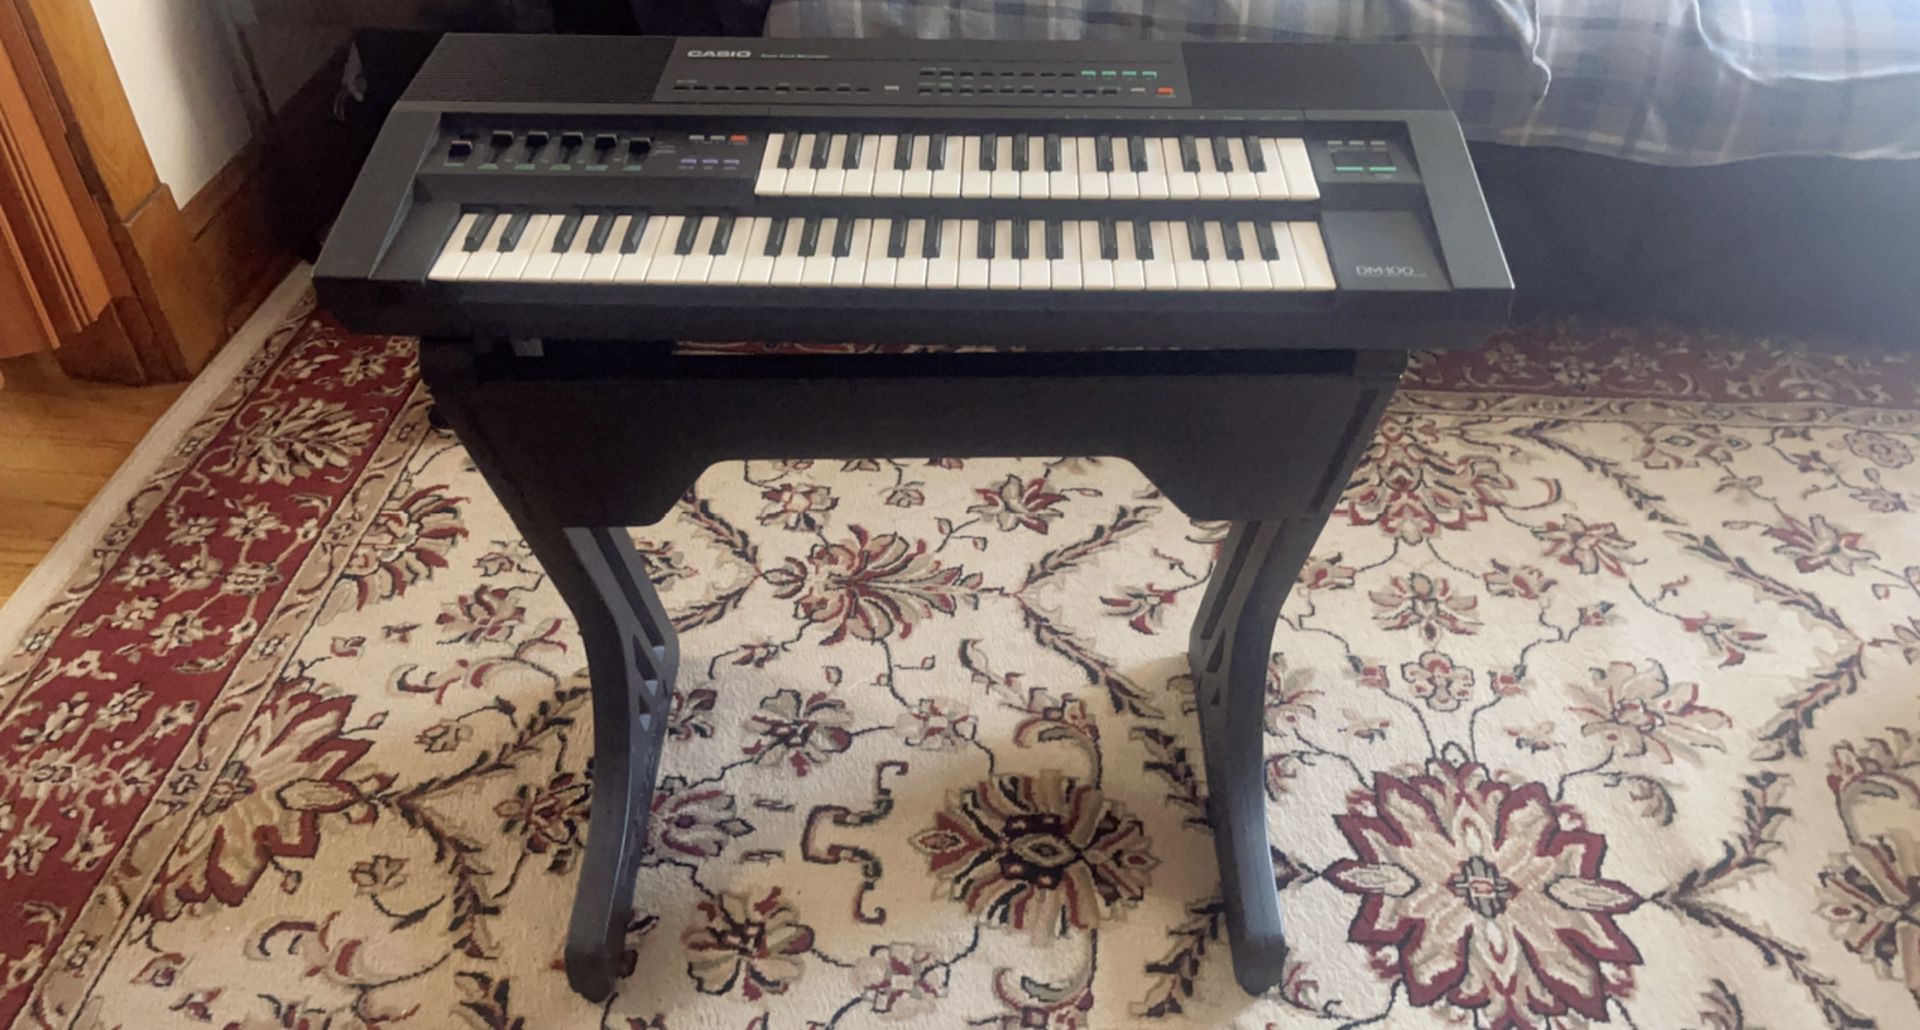 Casio Dm100 Electronic Piano 